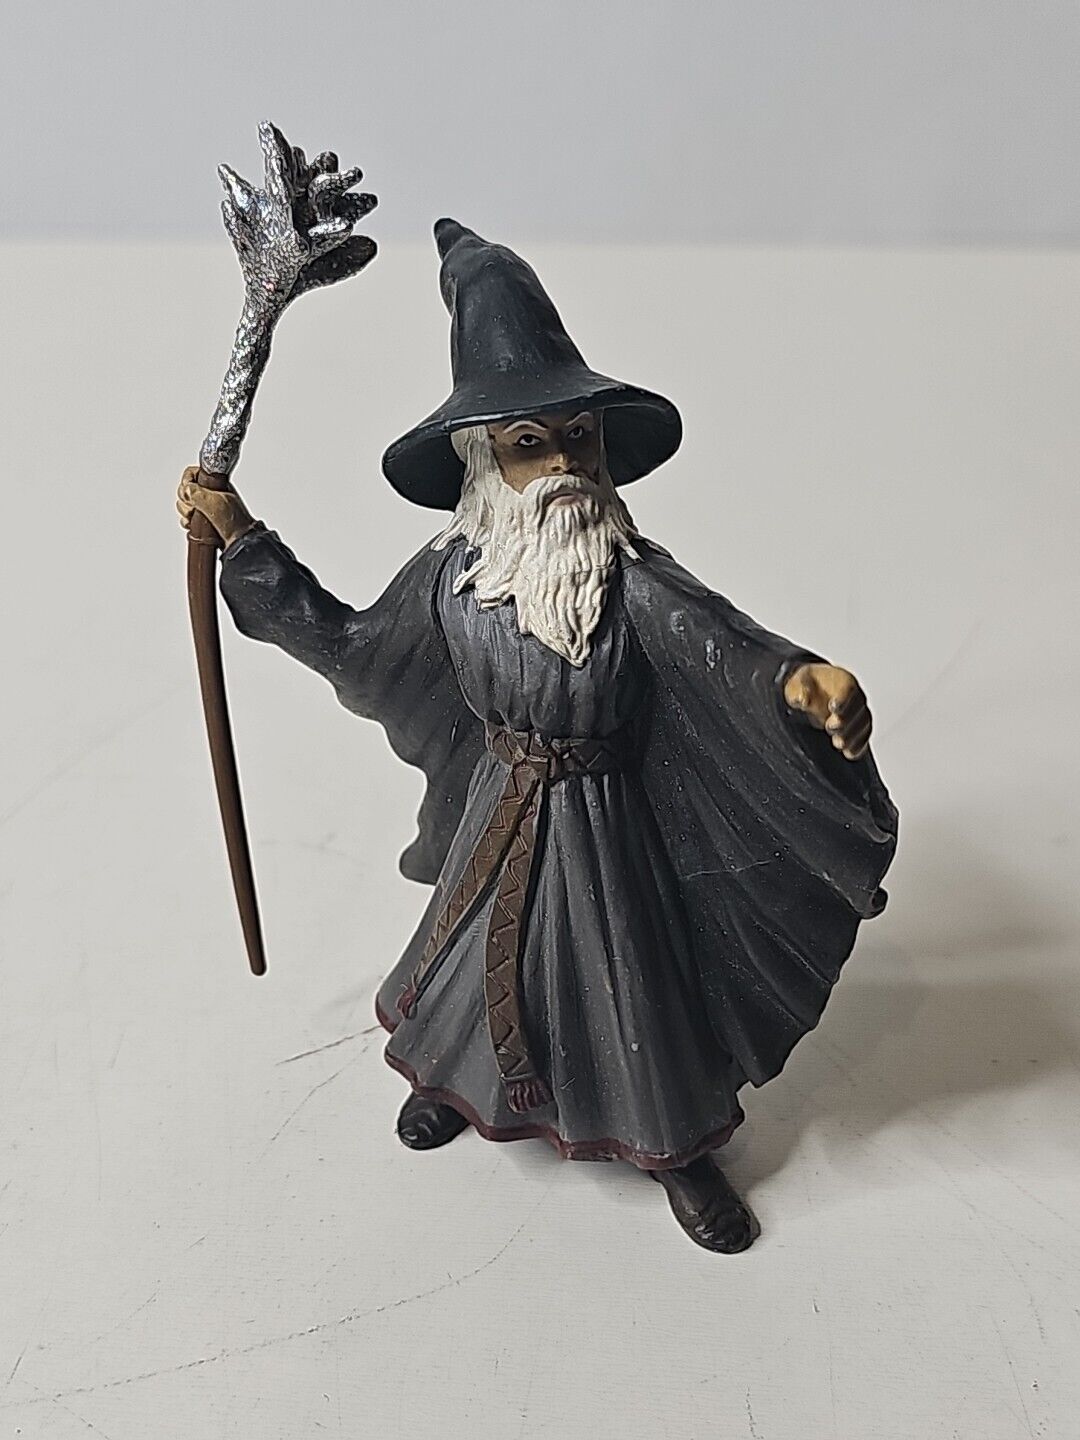 Schleich 2004 World of Knights WIZARD Retired Figure Medieval Fantasy Figurine